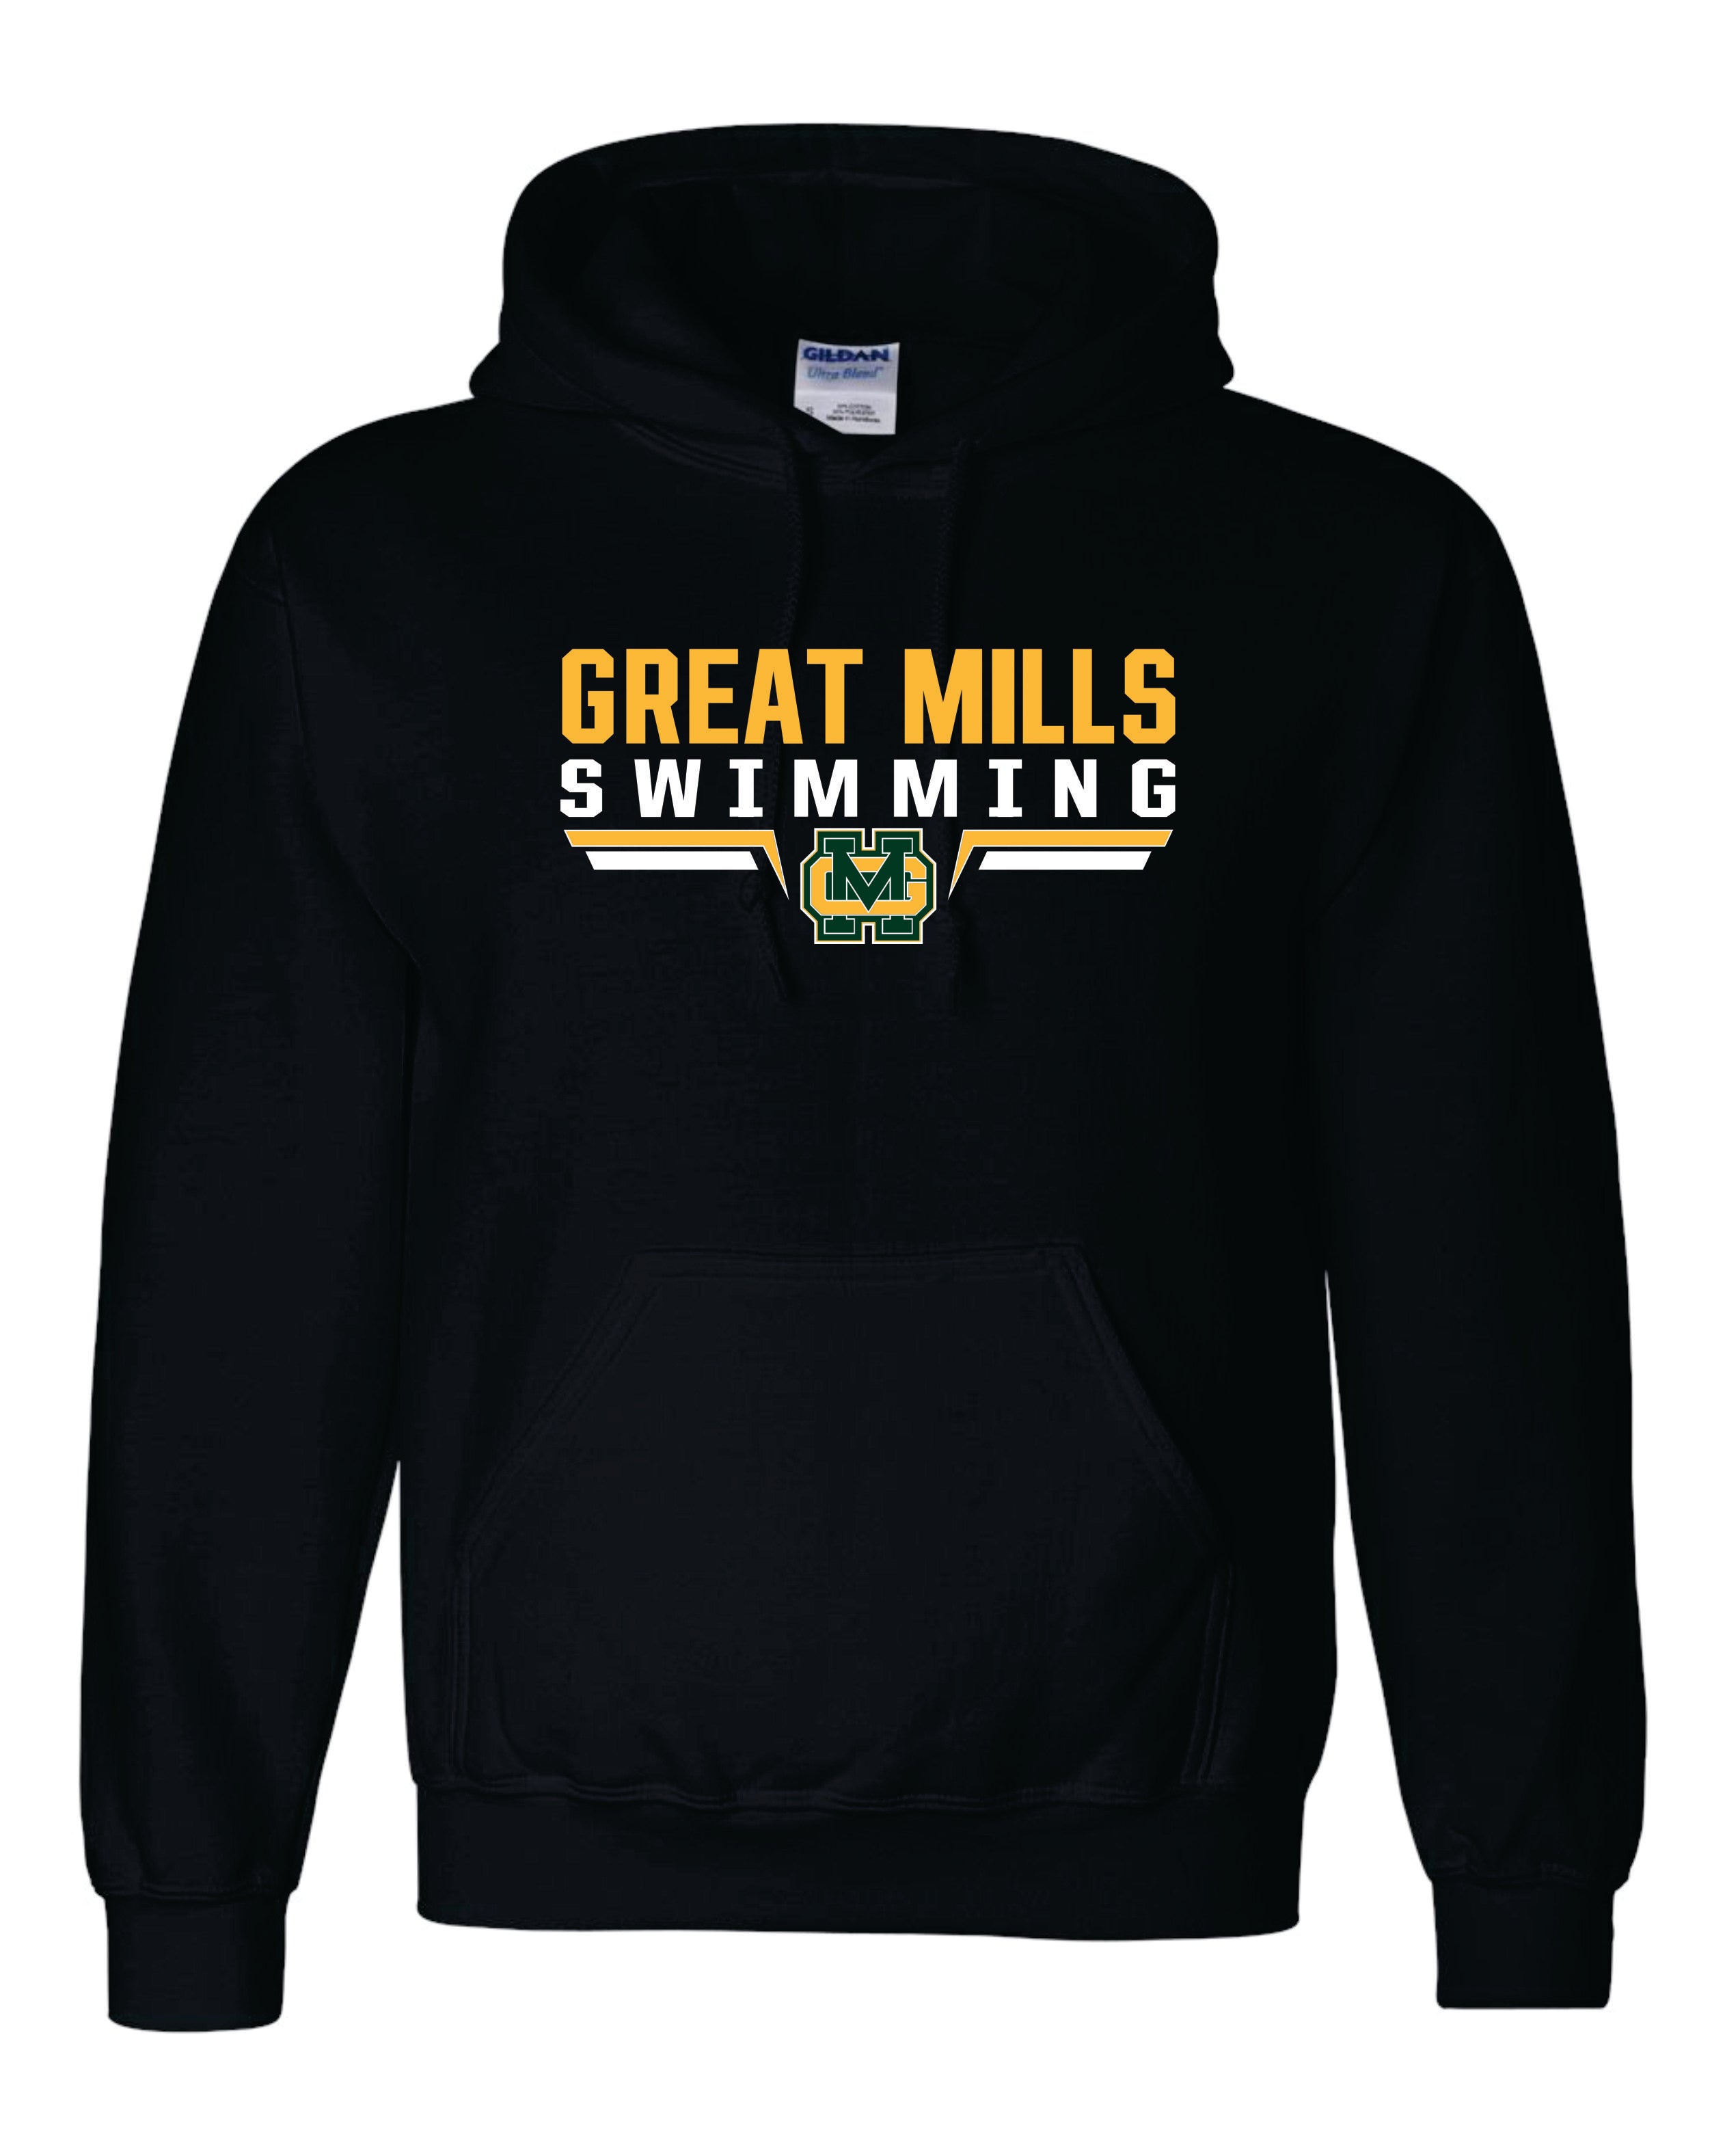 Great Mills Swimming Gildan/Jerzee 50/50 Hoodie